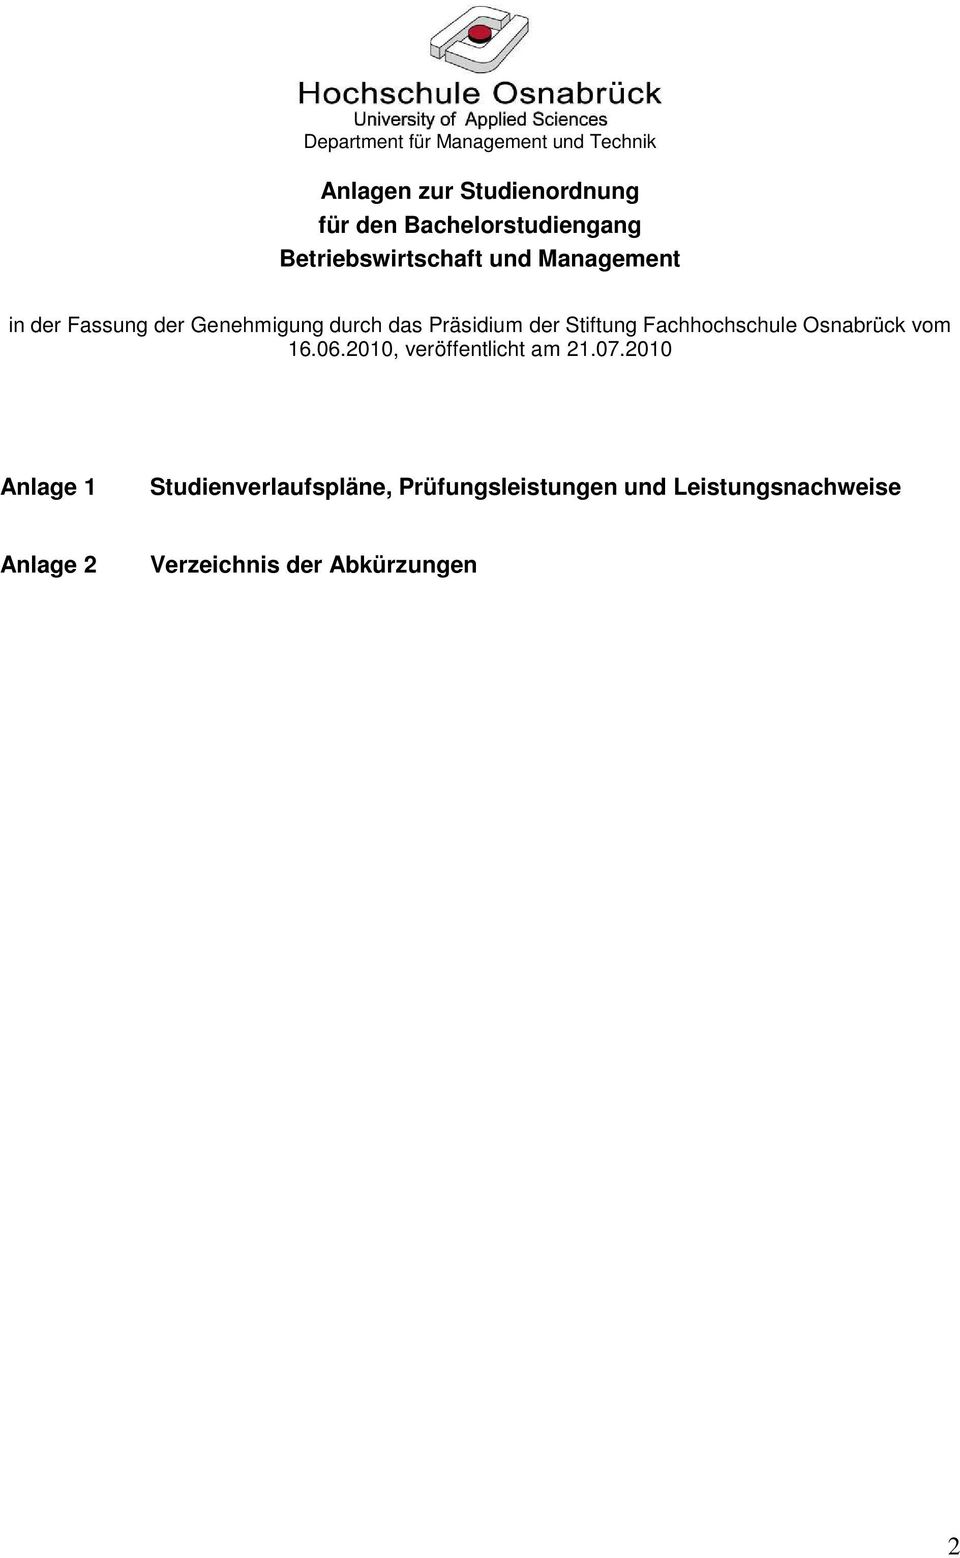 das Präsidium der Stiftung Fachhochschule Osnabrück vom 16.06.20, veröffentlicht am 21.07.